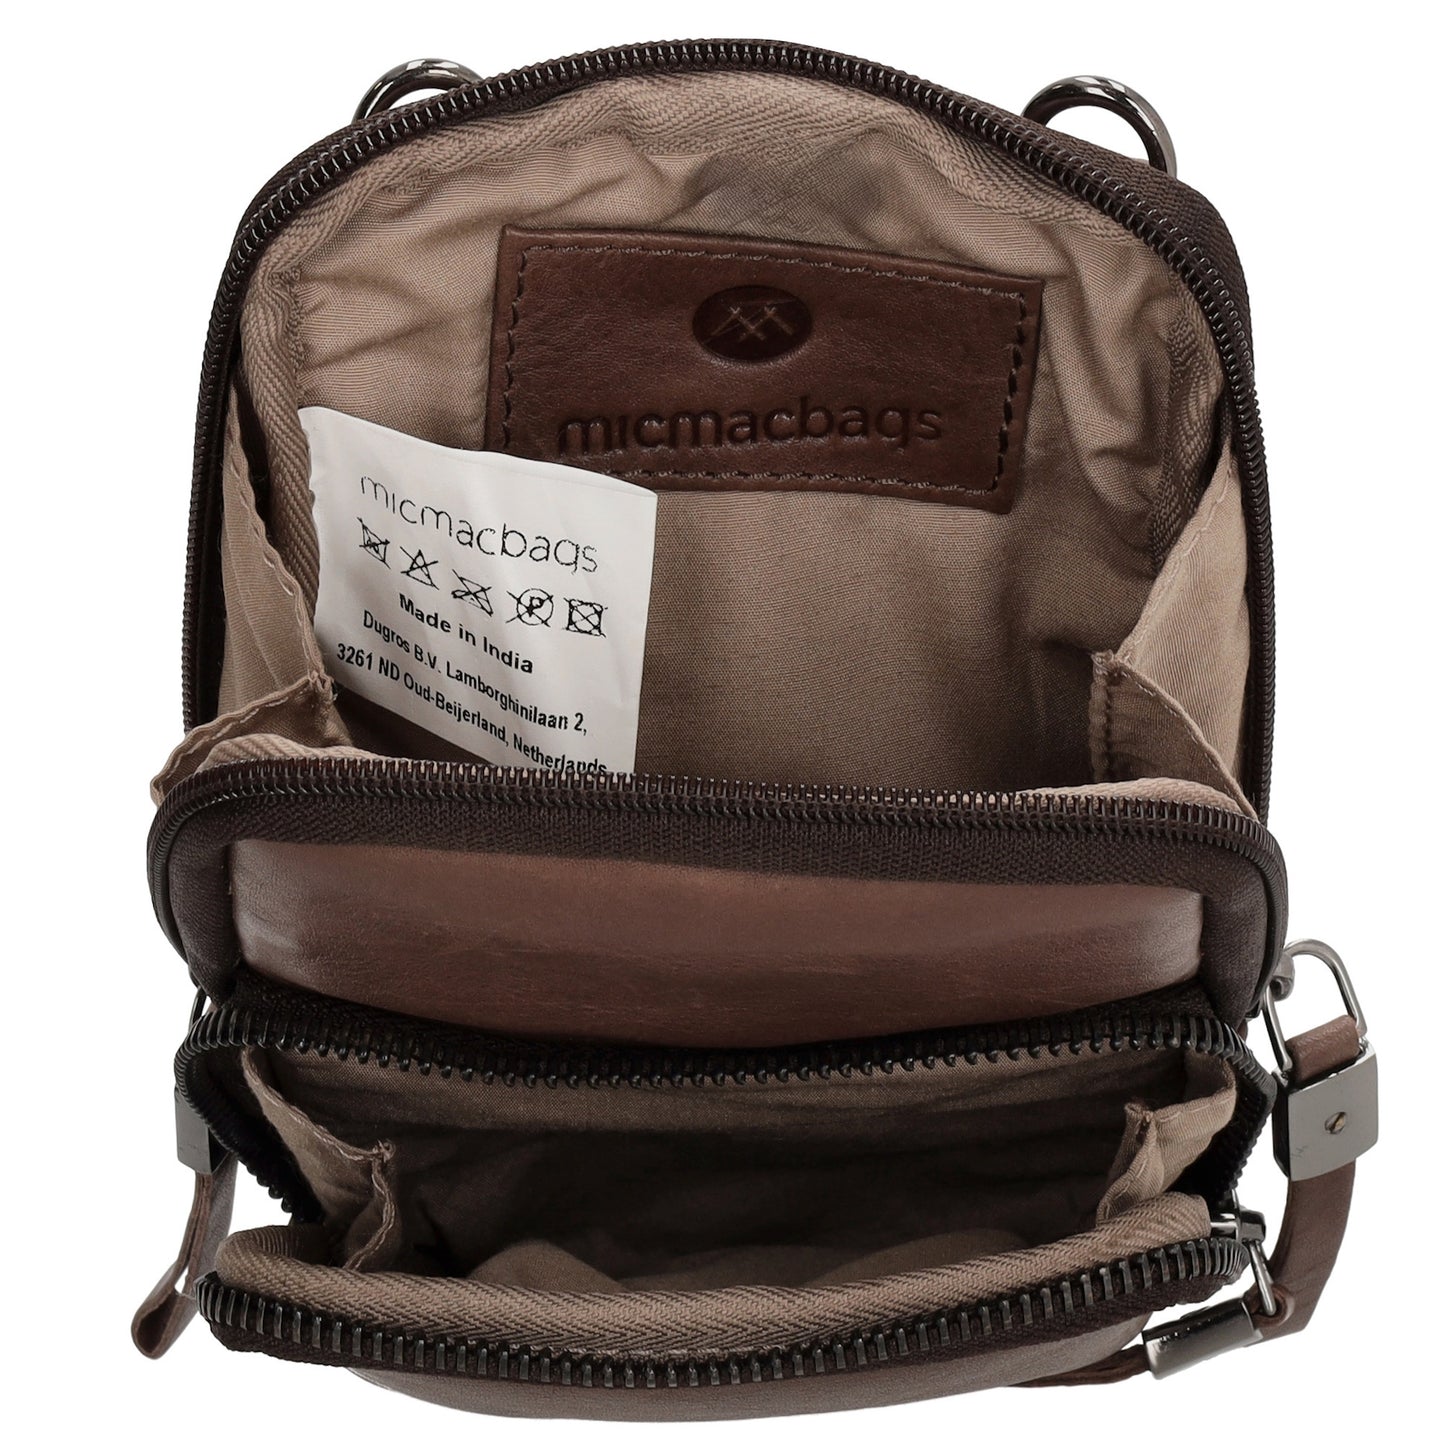 Handytasche| Mini Bag 11 x 19cm in Braun aus Leder mit Vortasche